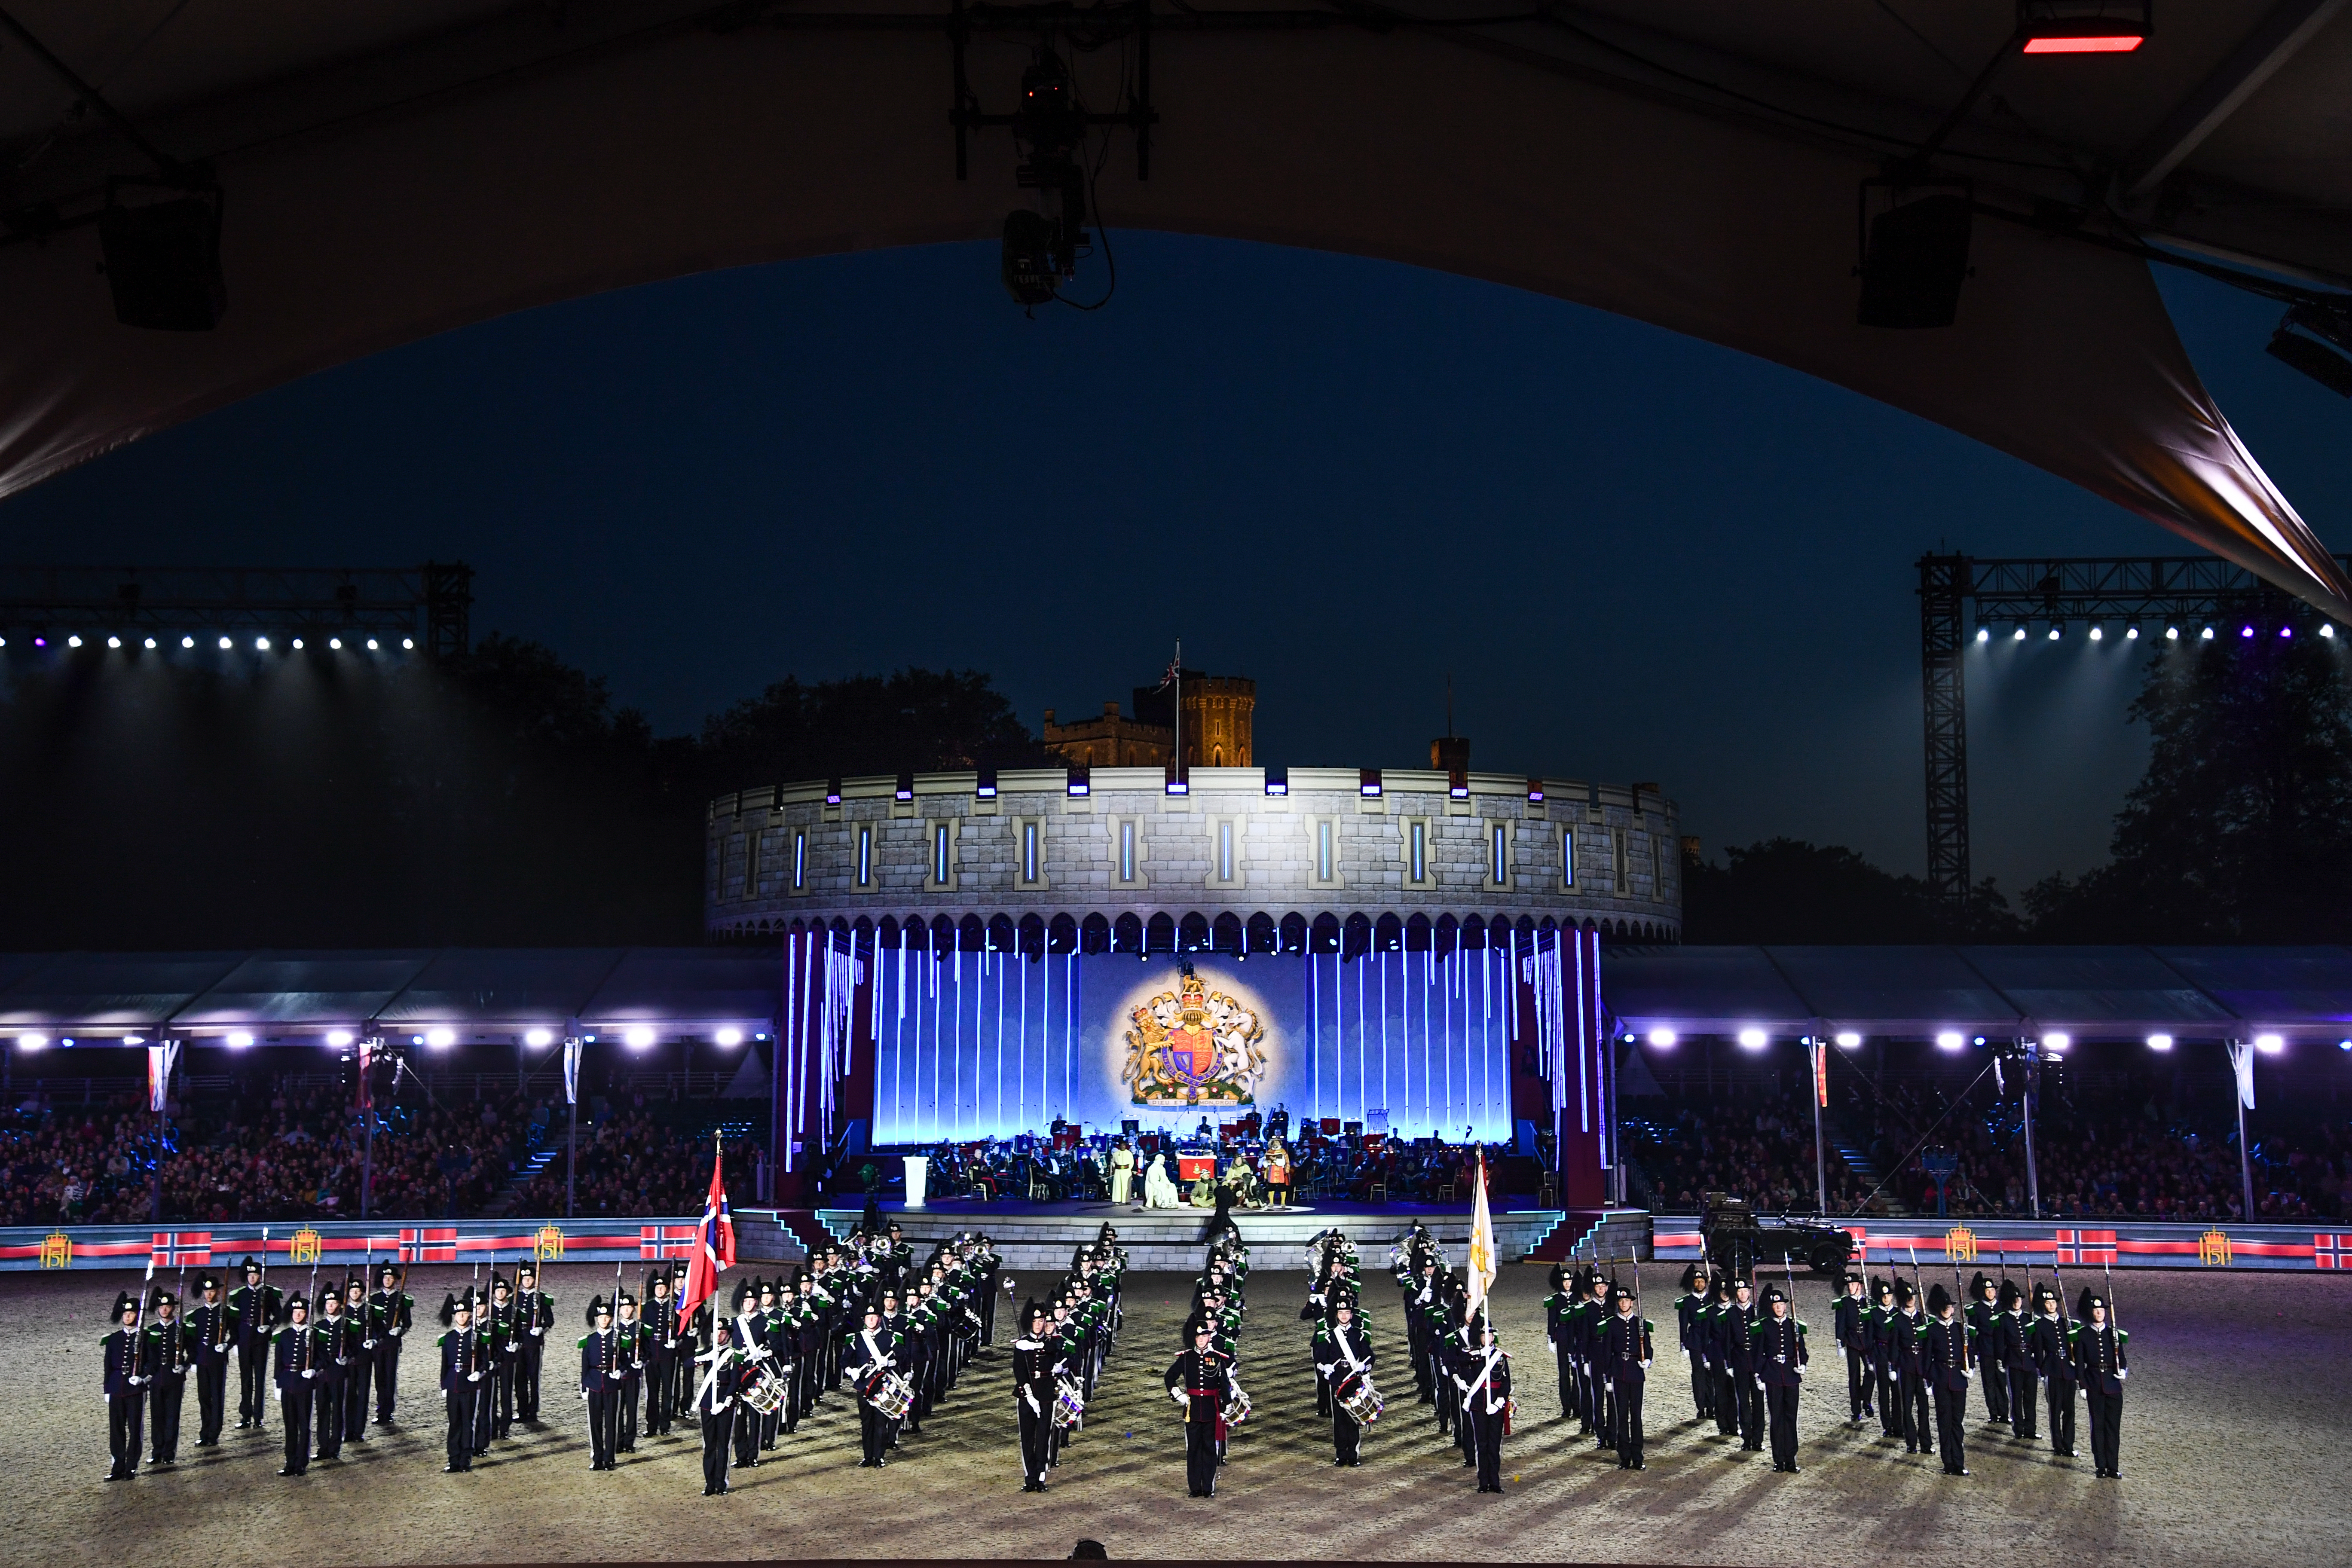 PRG levert volledige lichtinstallatie voor viering platina jubileum koningin Elizabeth op de royal windsor horse show